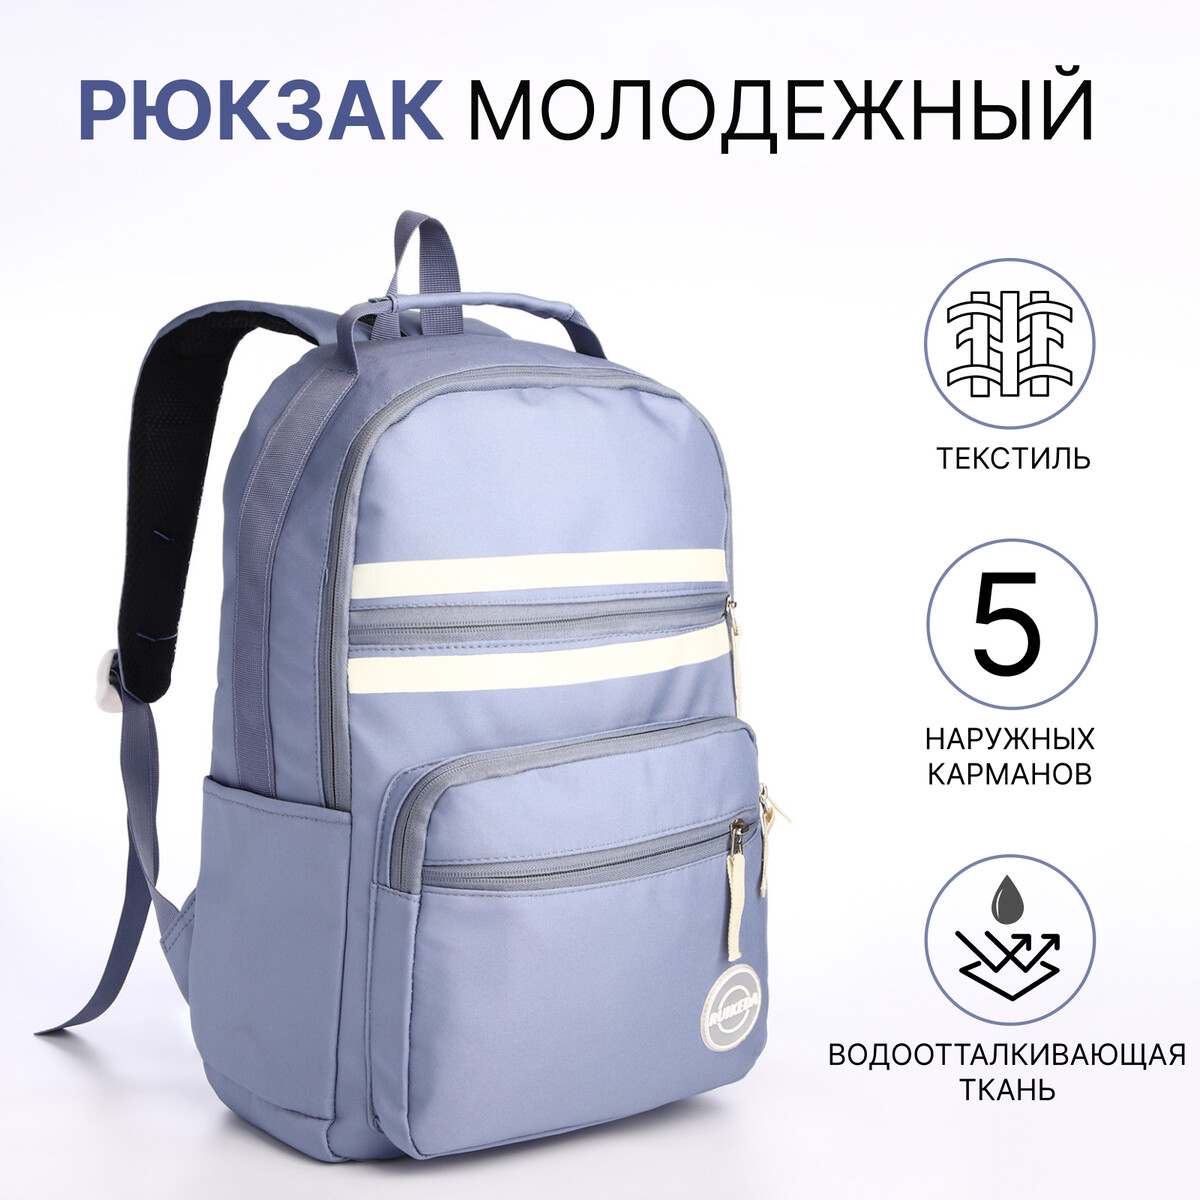 Рюкзак молодежный из текстиля на молнии, 5 карманов, цвет синий молодежный рюкзак grizzly rd 444 2 2 синий